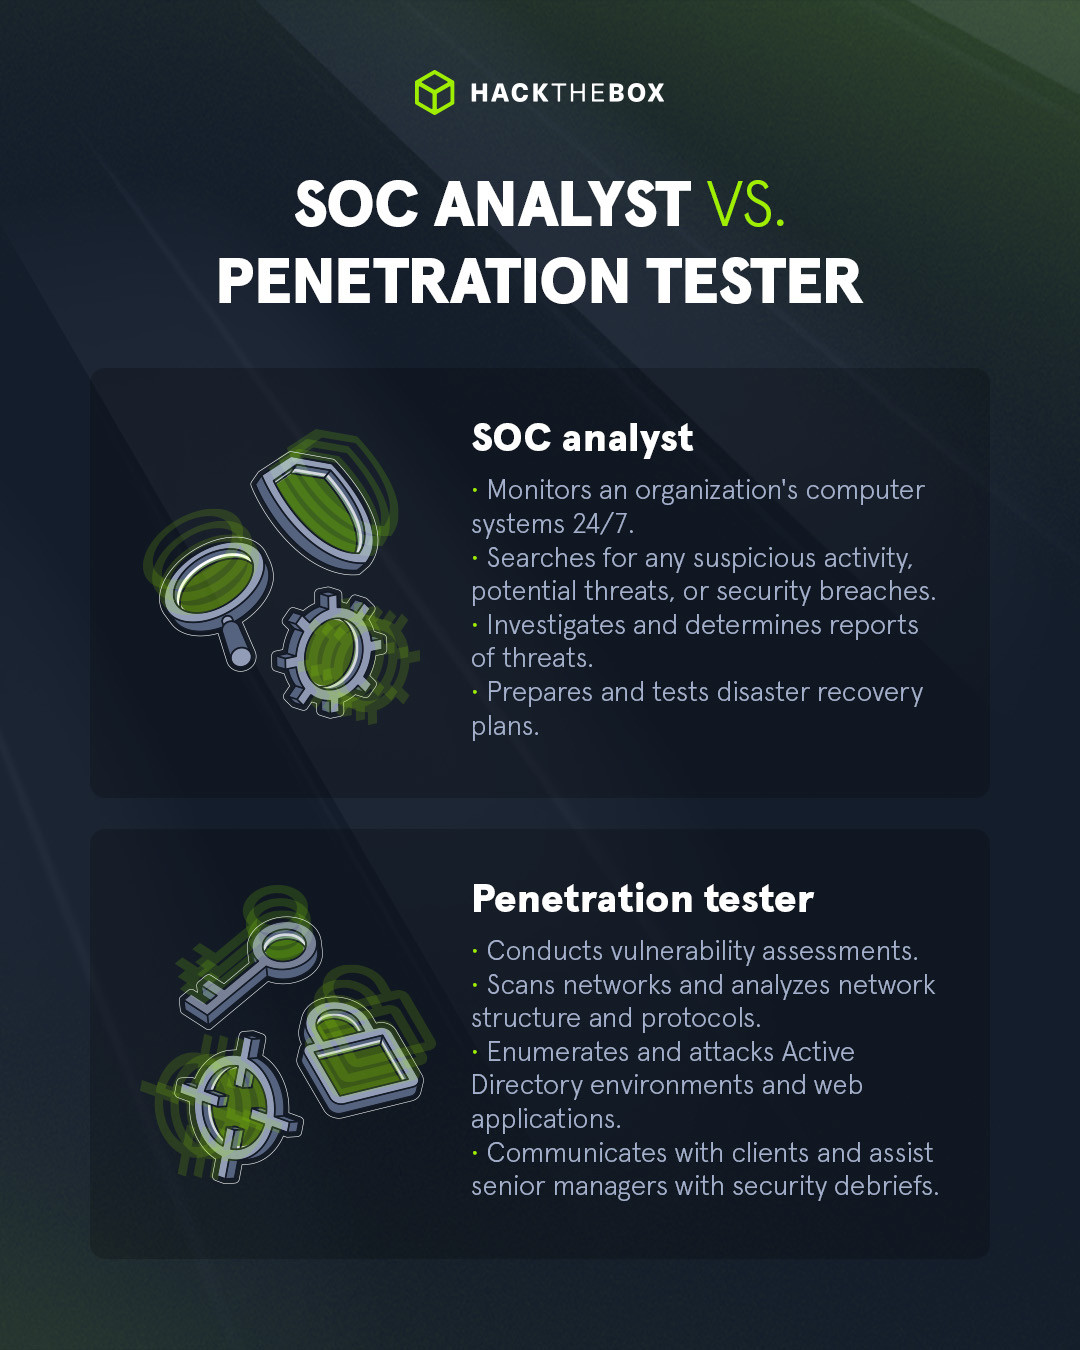 SOC analyst vs. penetration tester